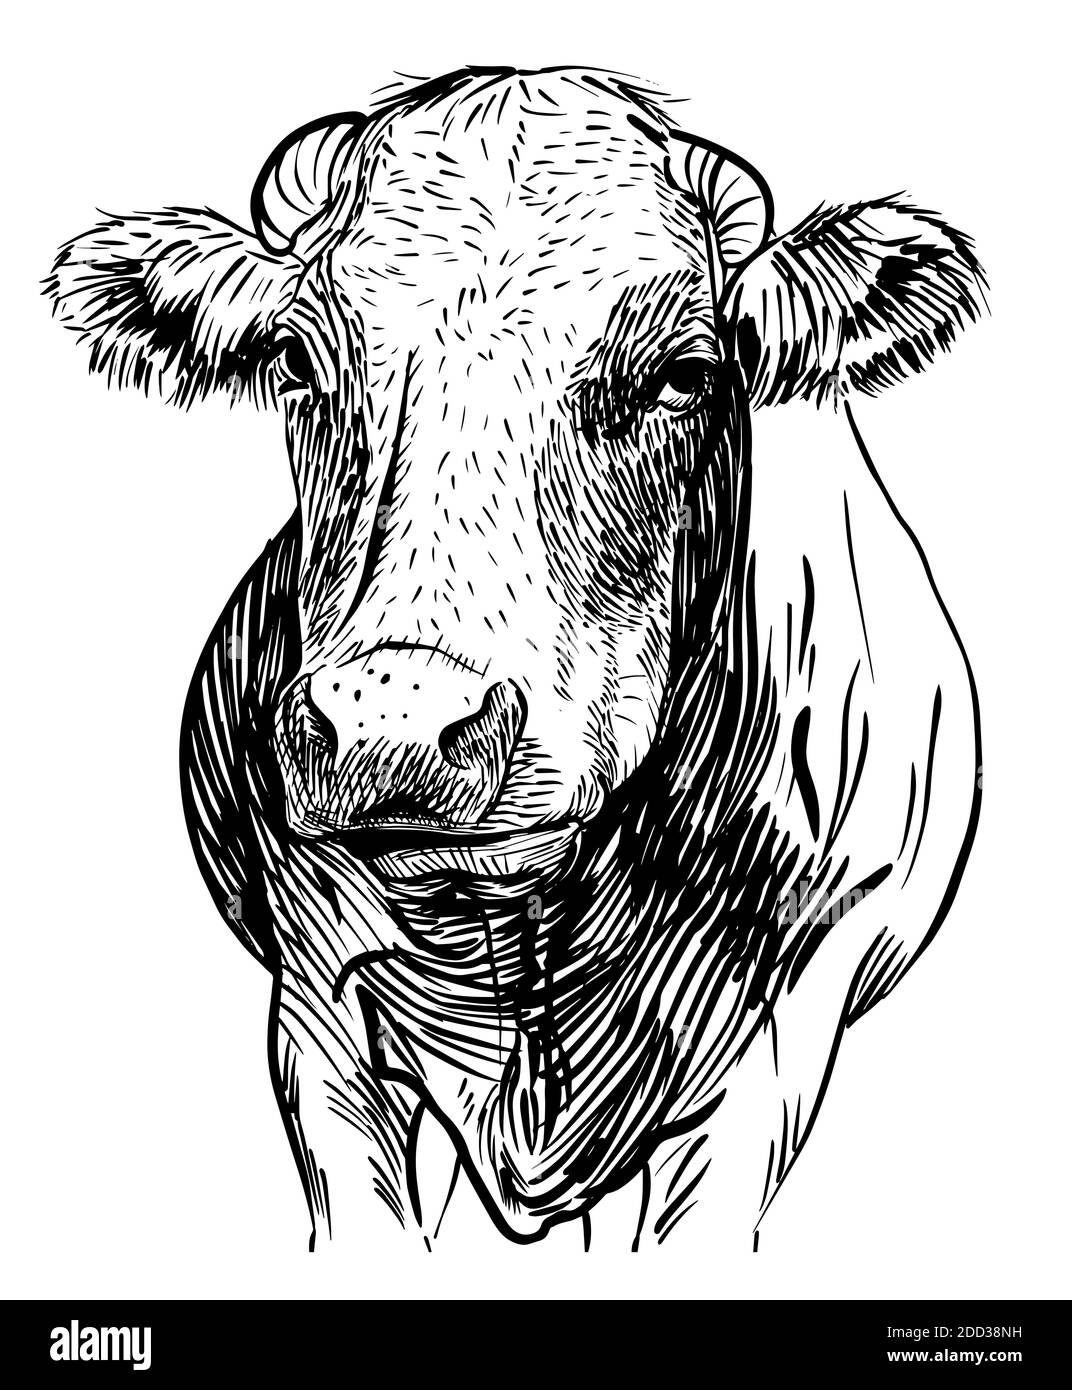 Kuhkopf. Von Hand gezeichnet in einem Skizzenstil schwarz-weiß Vektor-Illustration Stock Vektor